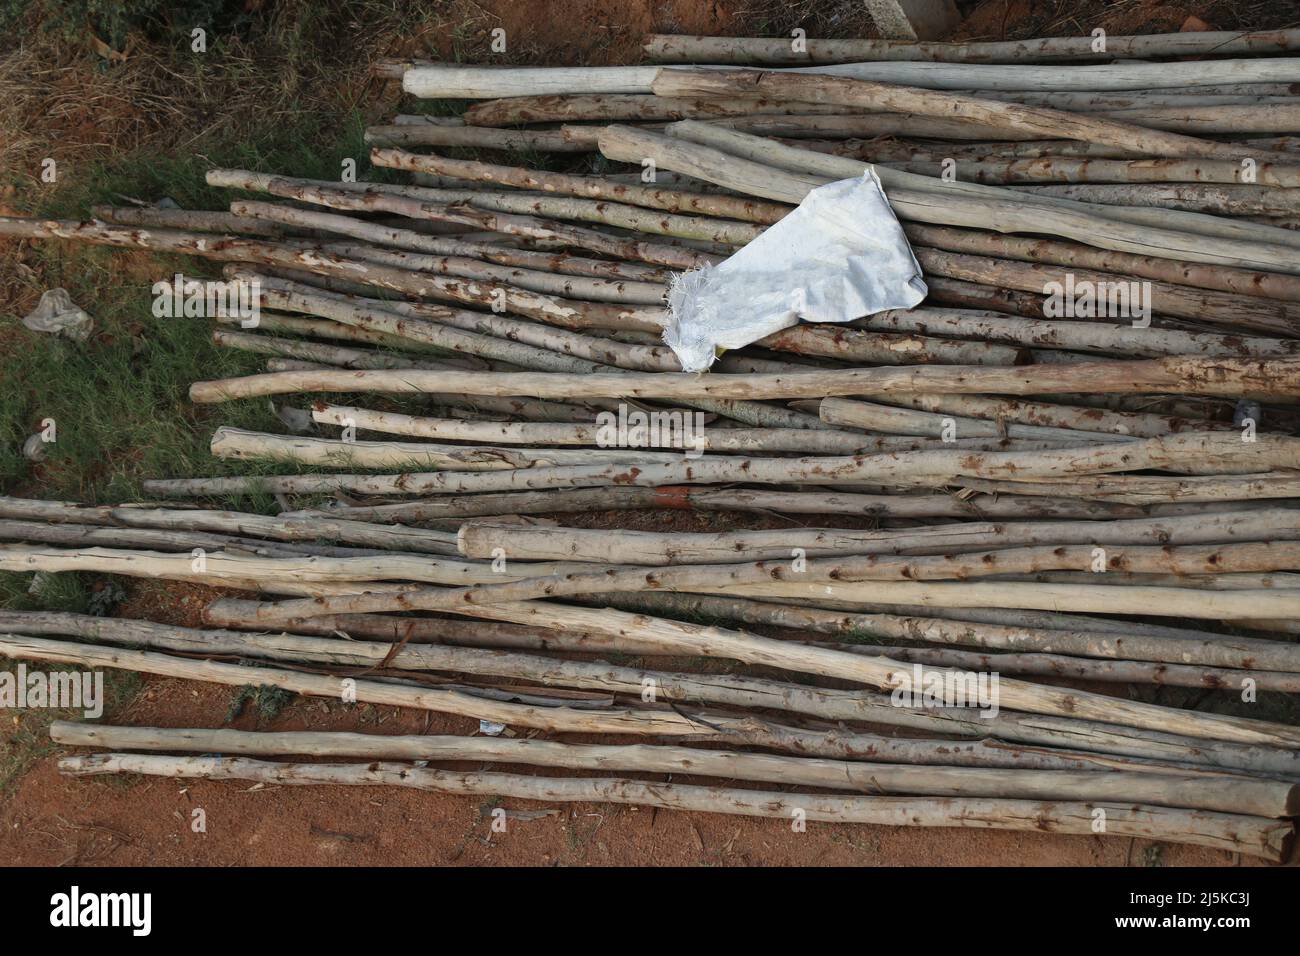 Eine Gruppe von Stützstangen oder Holzstützen, die für die Konstruktion verwendet werden, heißt Gerüste, die auf dem Boden liegen Stockfoto